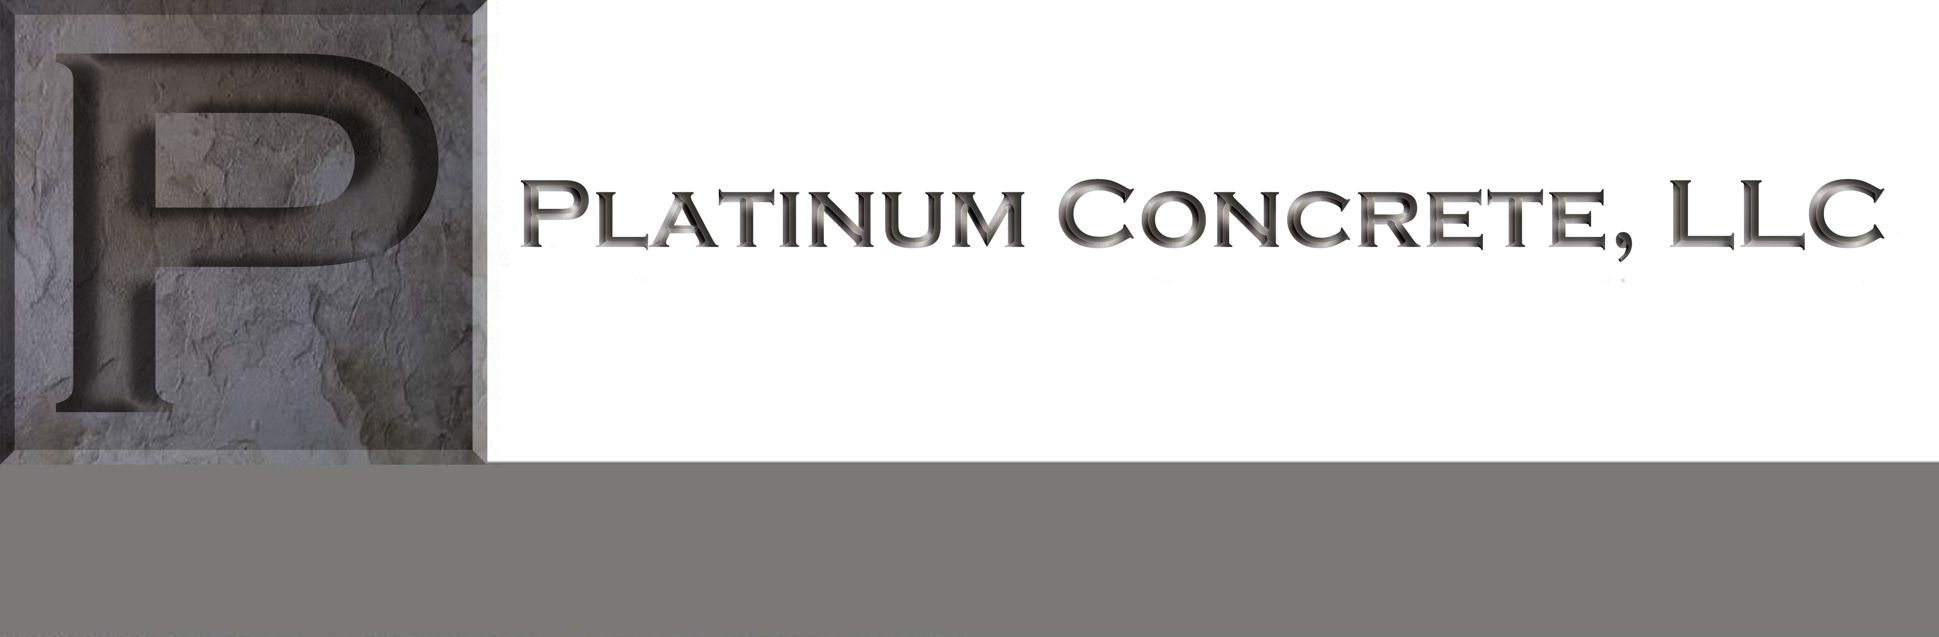 Platinum Concrete LLC